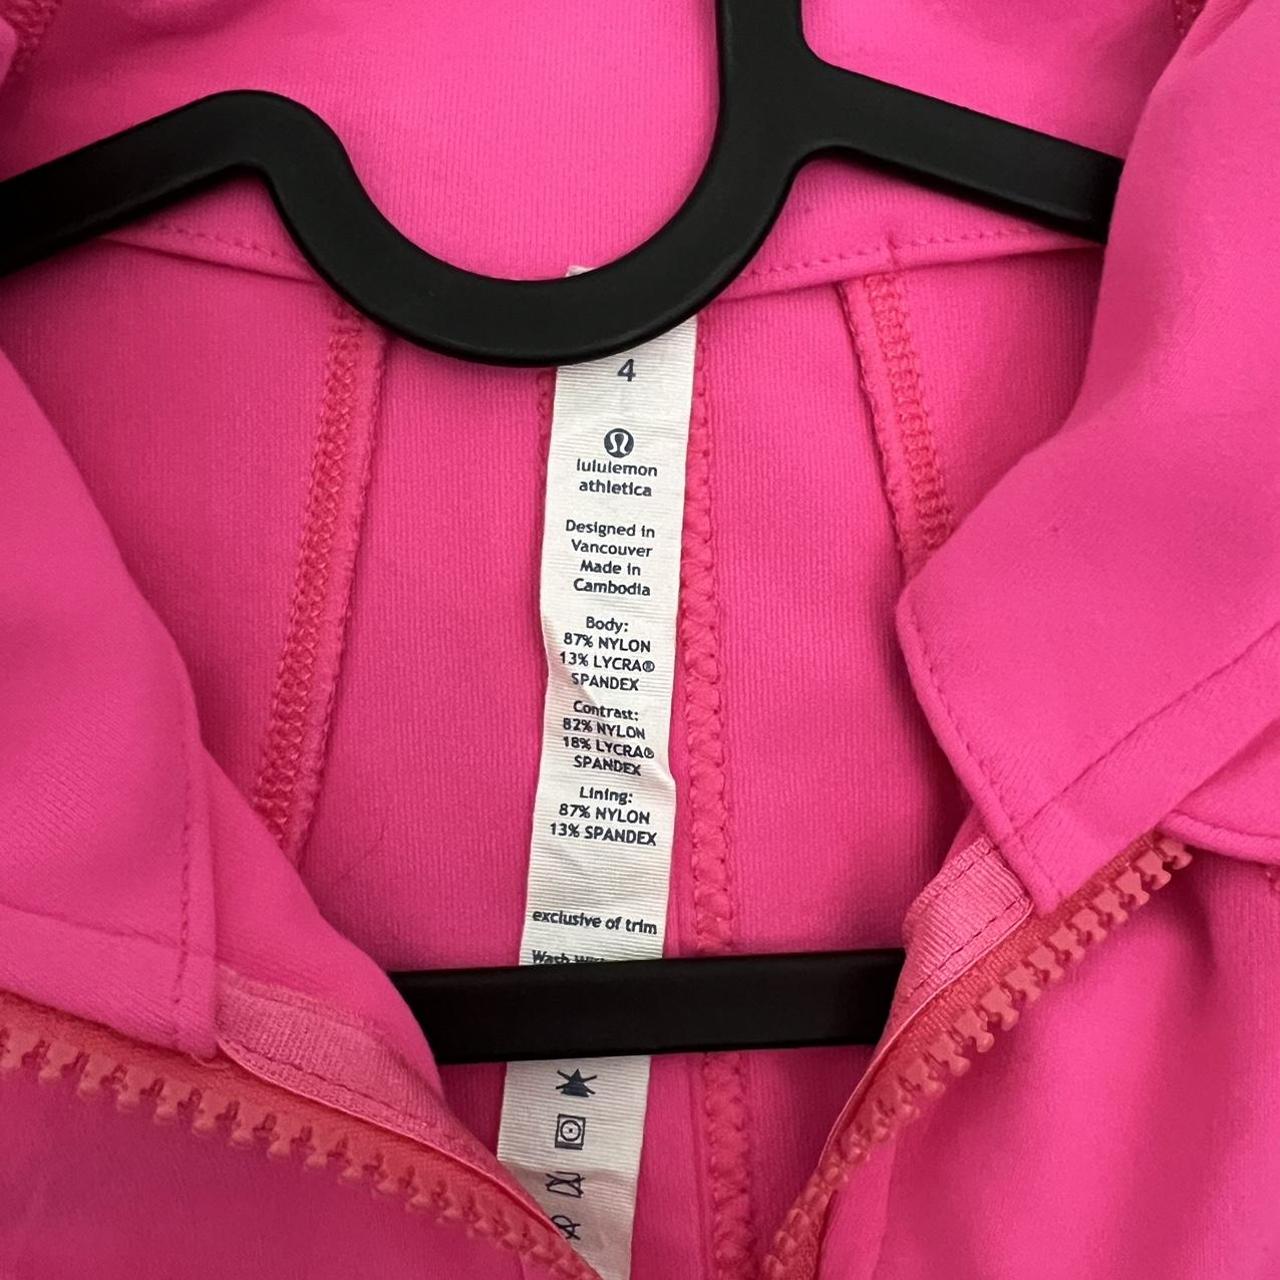 Sonic Pink Lululemon Define Jacket Size 4 Rare not - Depop